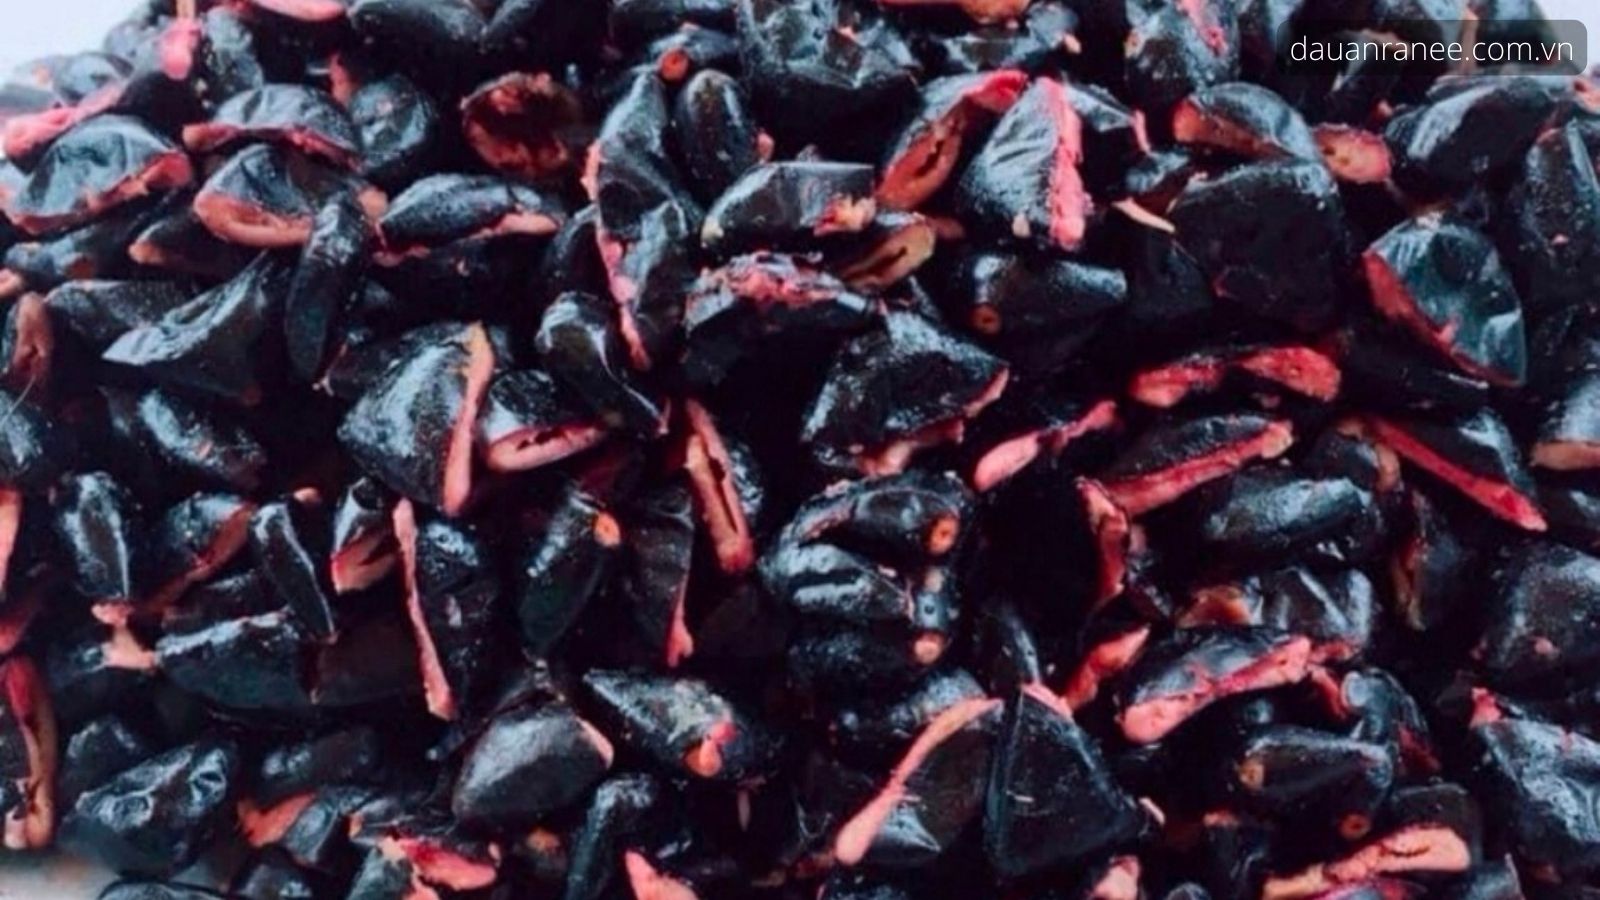 Trám đen là món ăn, món quà ngon thơm đặc biệt - Thưởng thức những món ăn đặc sản ngon